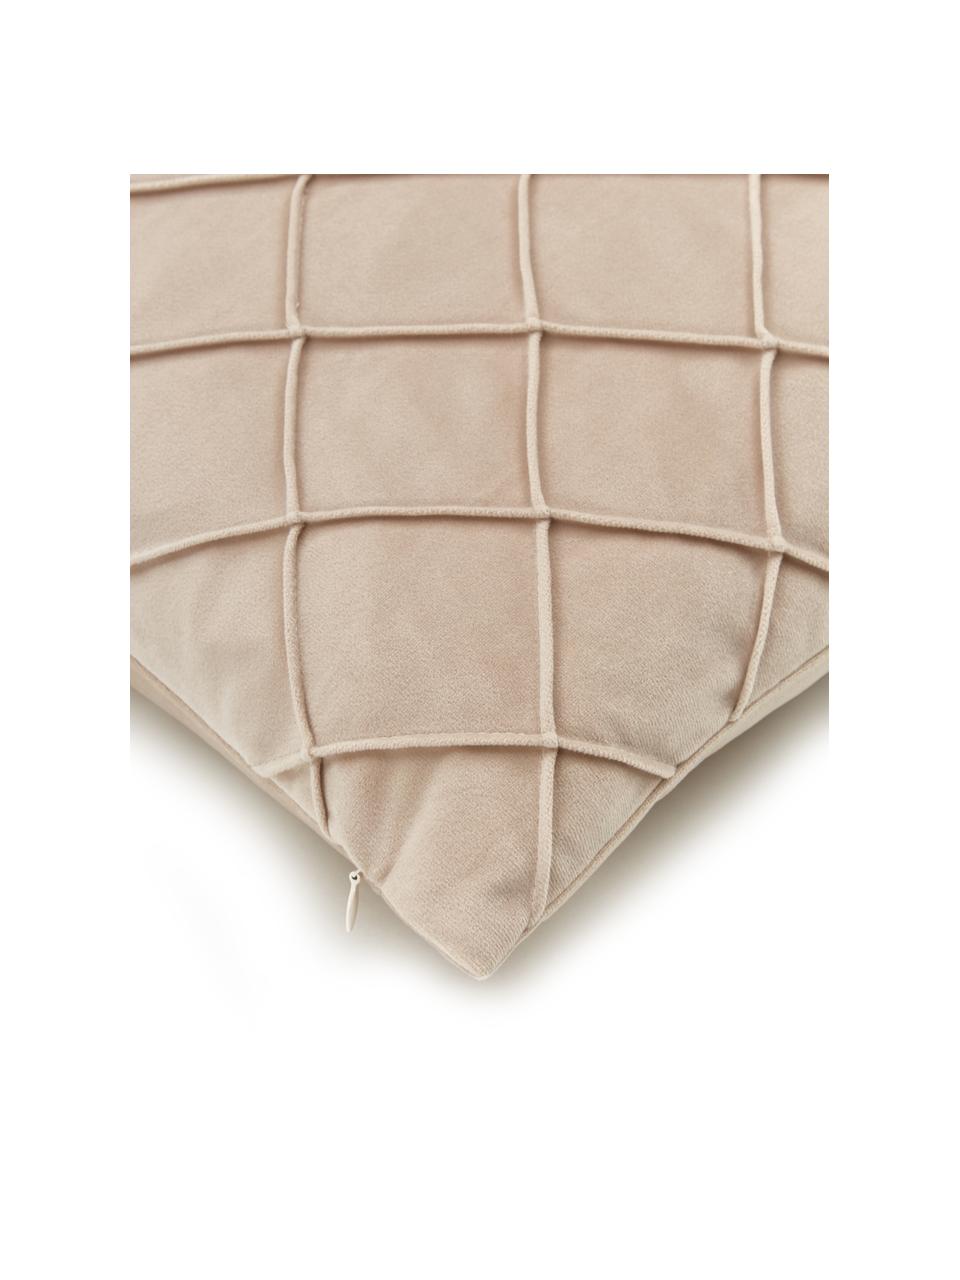 Samt-Kissenhülle Luka in Beige mit Struktur-Karomuster, Samt (100% Polyester), Beige, B 50 x L 50 cm